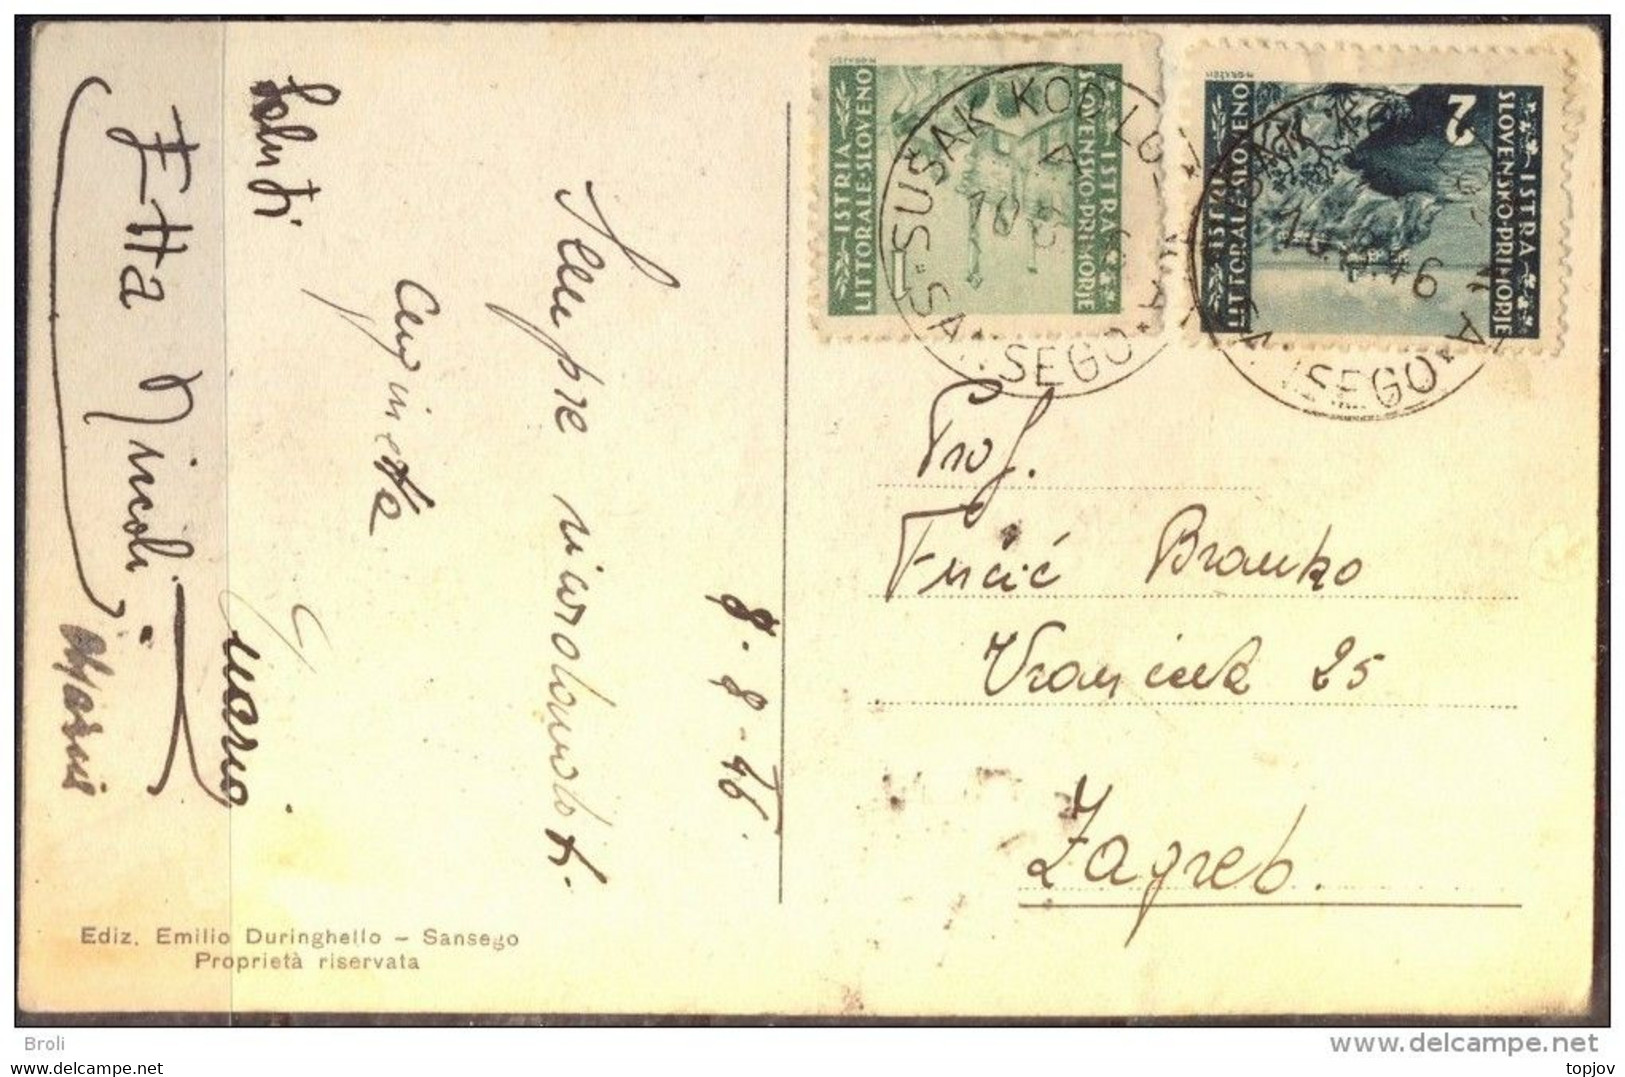 JUGOSLAVIA - ISTRIA - ZONA B - Postmark "SUŠAK KOD LOŠINJA - SANSEGO" - 1946 - EXTREM RARE - Marcophilia